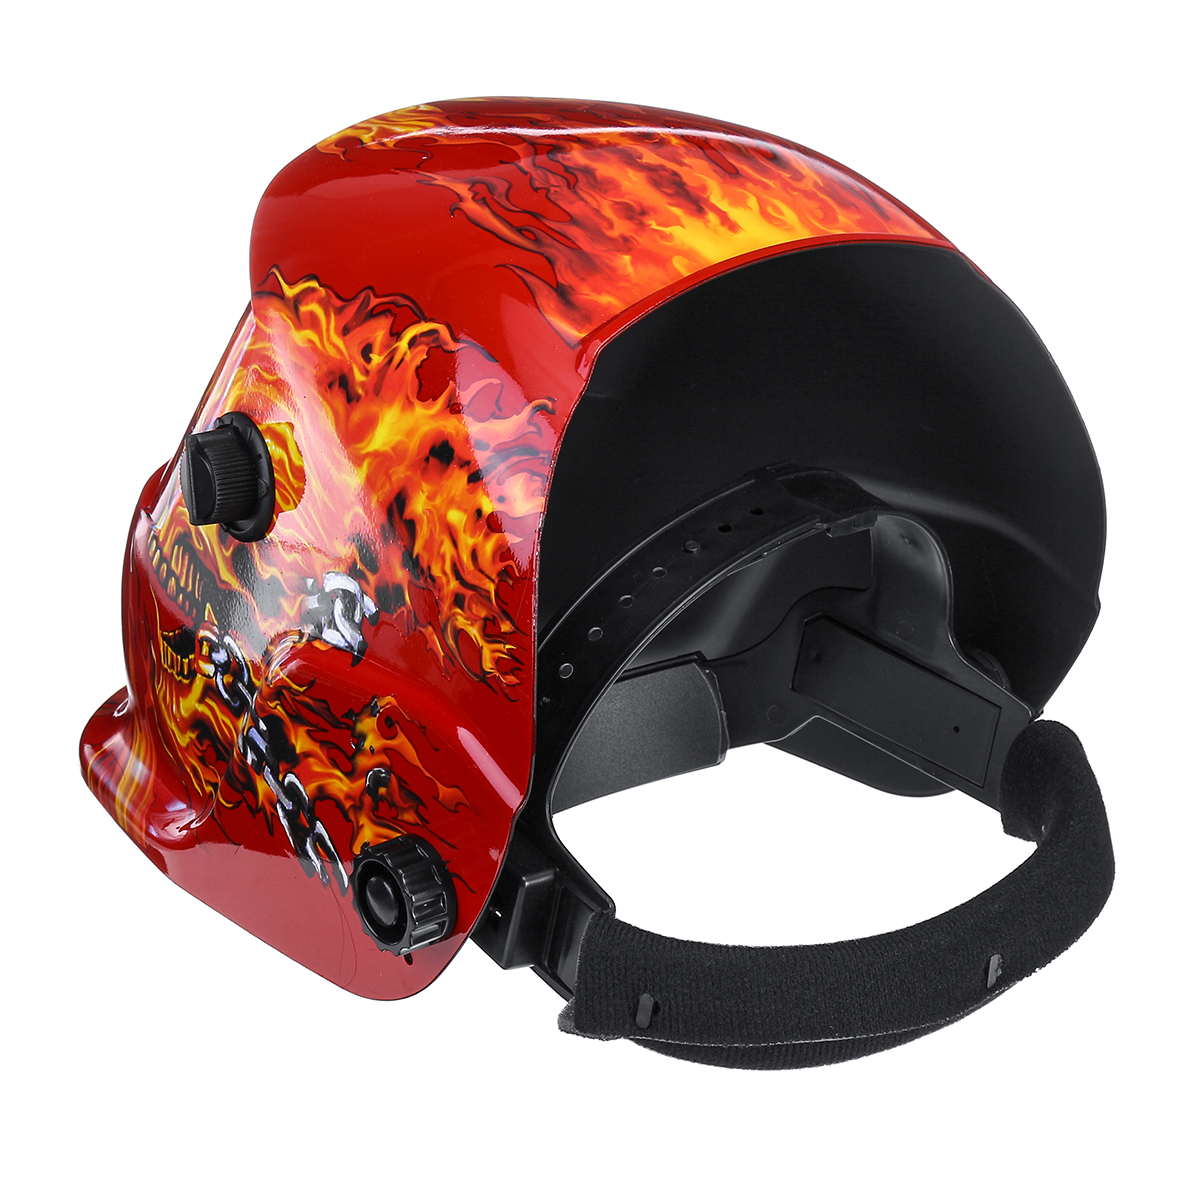 Solar-Auto-Darkening-Welding-Helmet-Len-Mask-Grinding-Welder-Protective-Mask-1625108-7